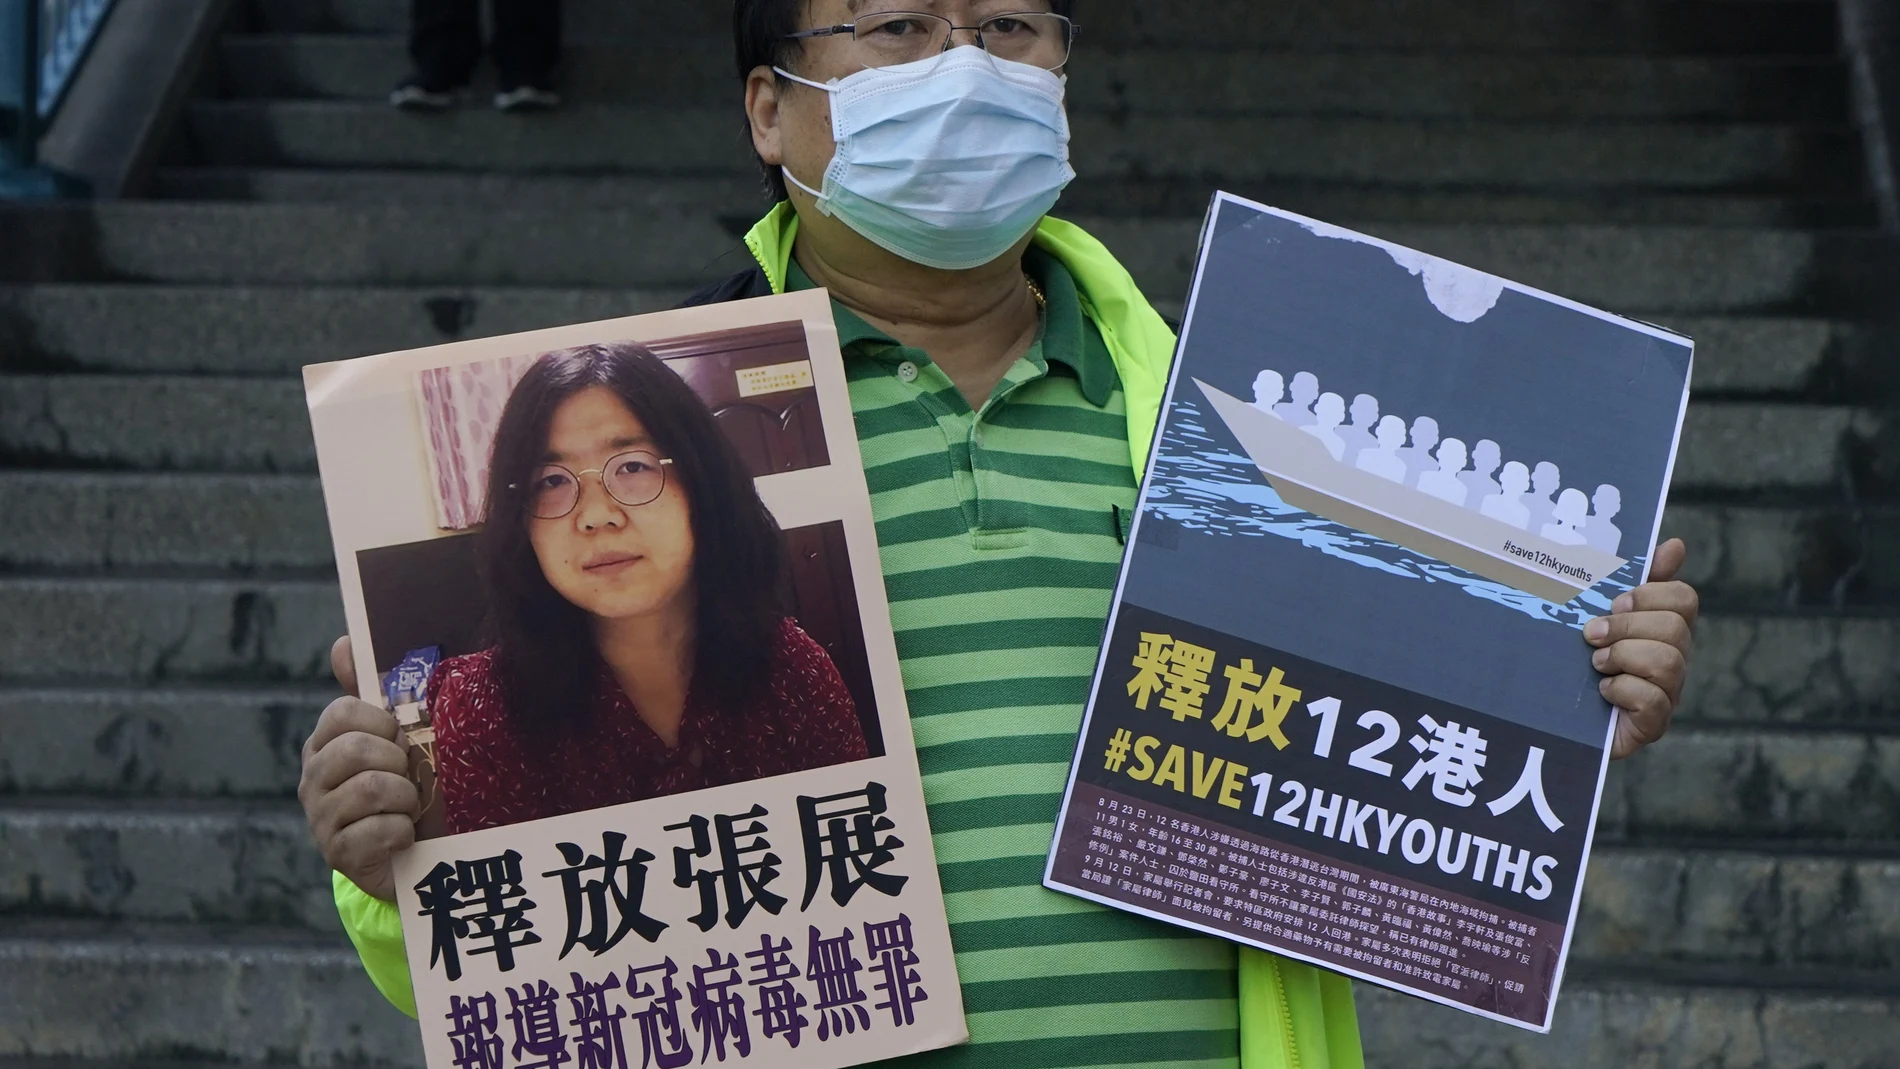 Un activista prodemocracia sostiene carteles con la foto de la periodista Zhang Zhan frente a la oficina del gobierno central chino, en Hong Kong